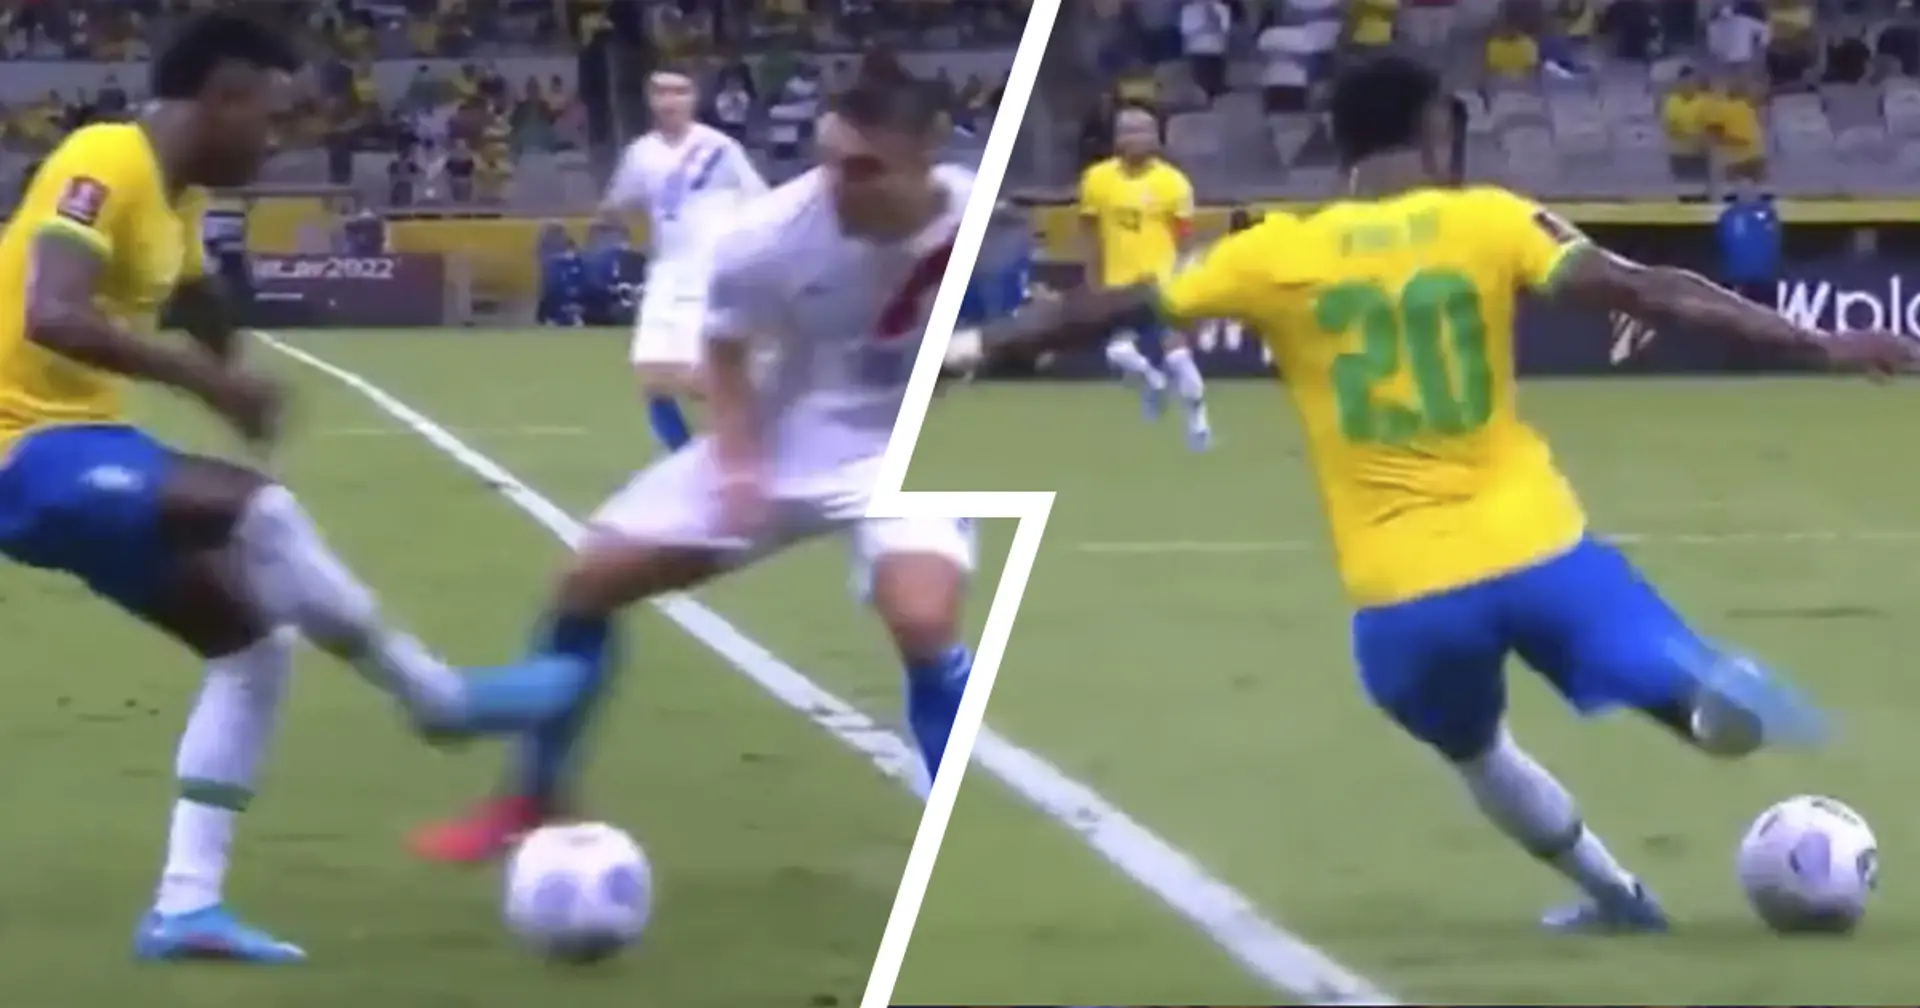 "Passé de Neymar à Xabi Alonso en 8 secondes": Vinicius fait la une des journaux après son geste fou avec le Brésil